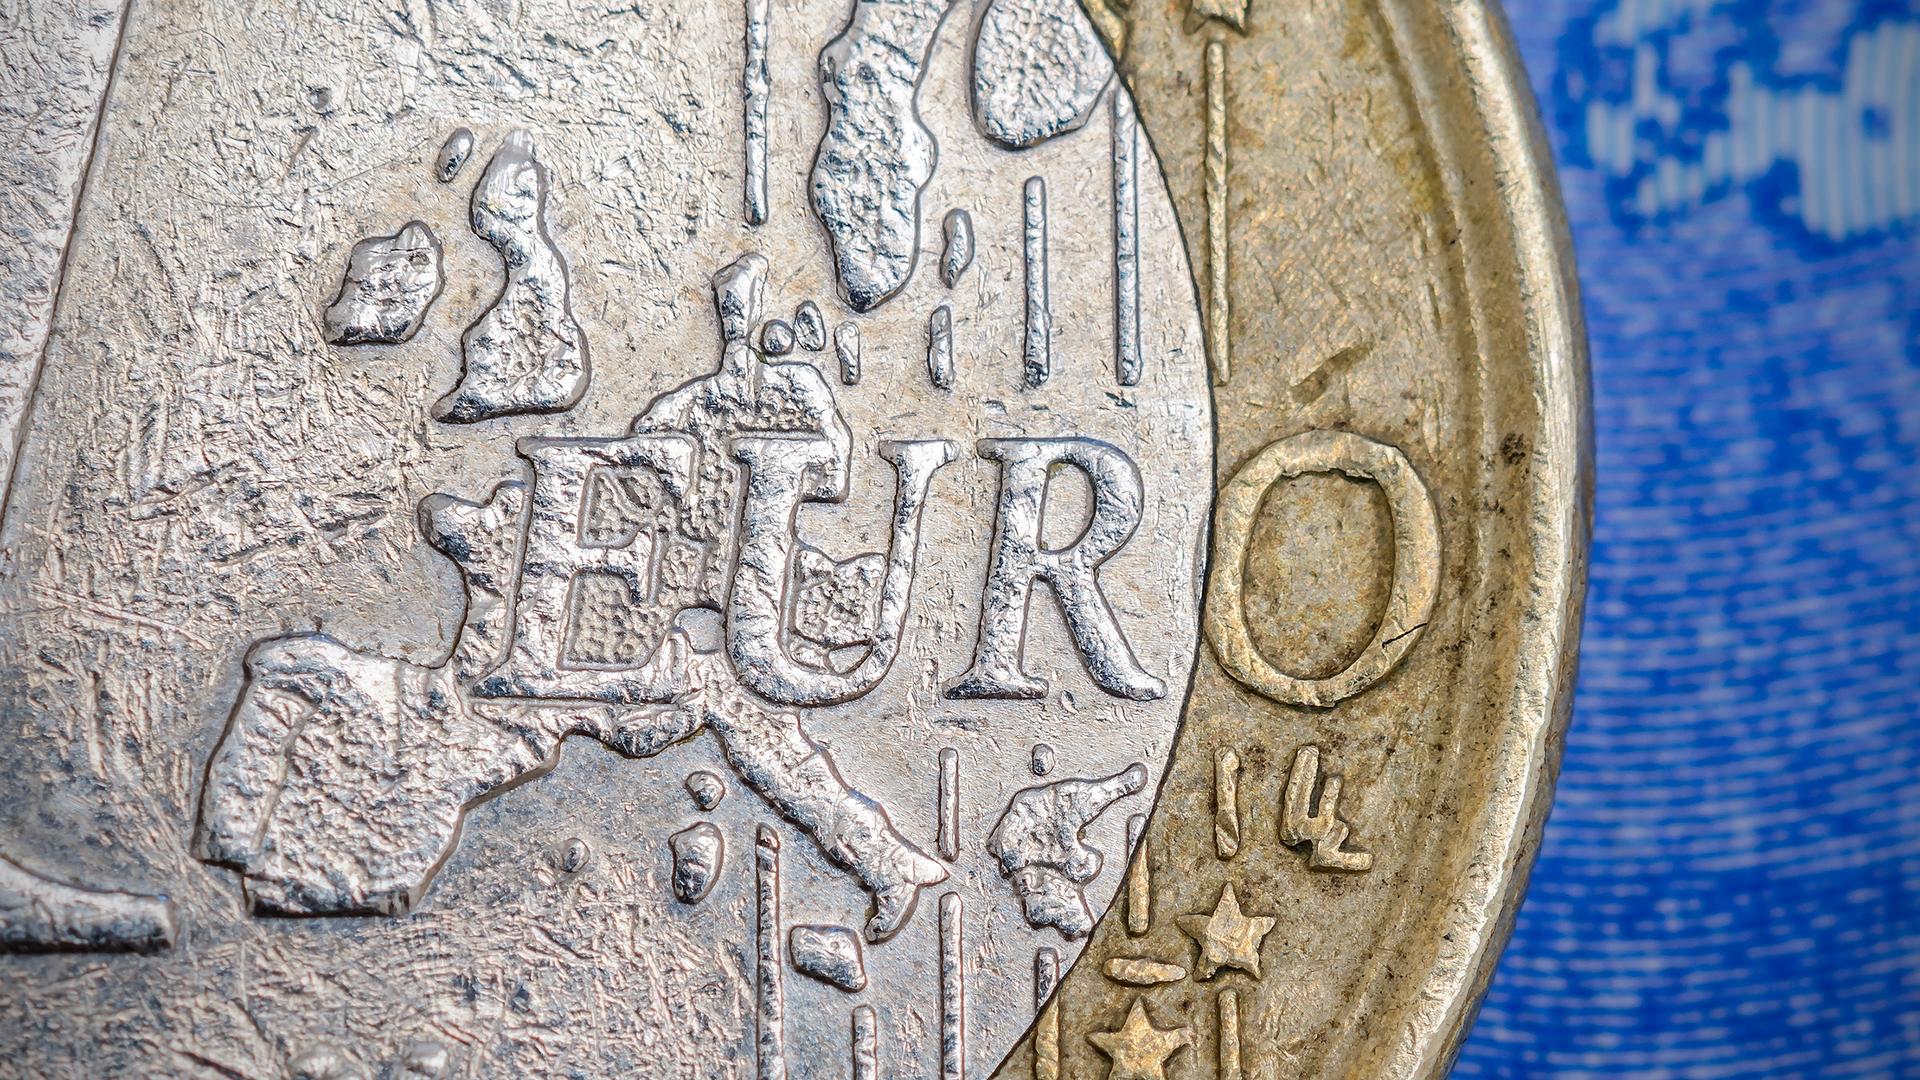 Euromünze